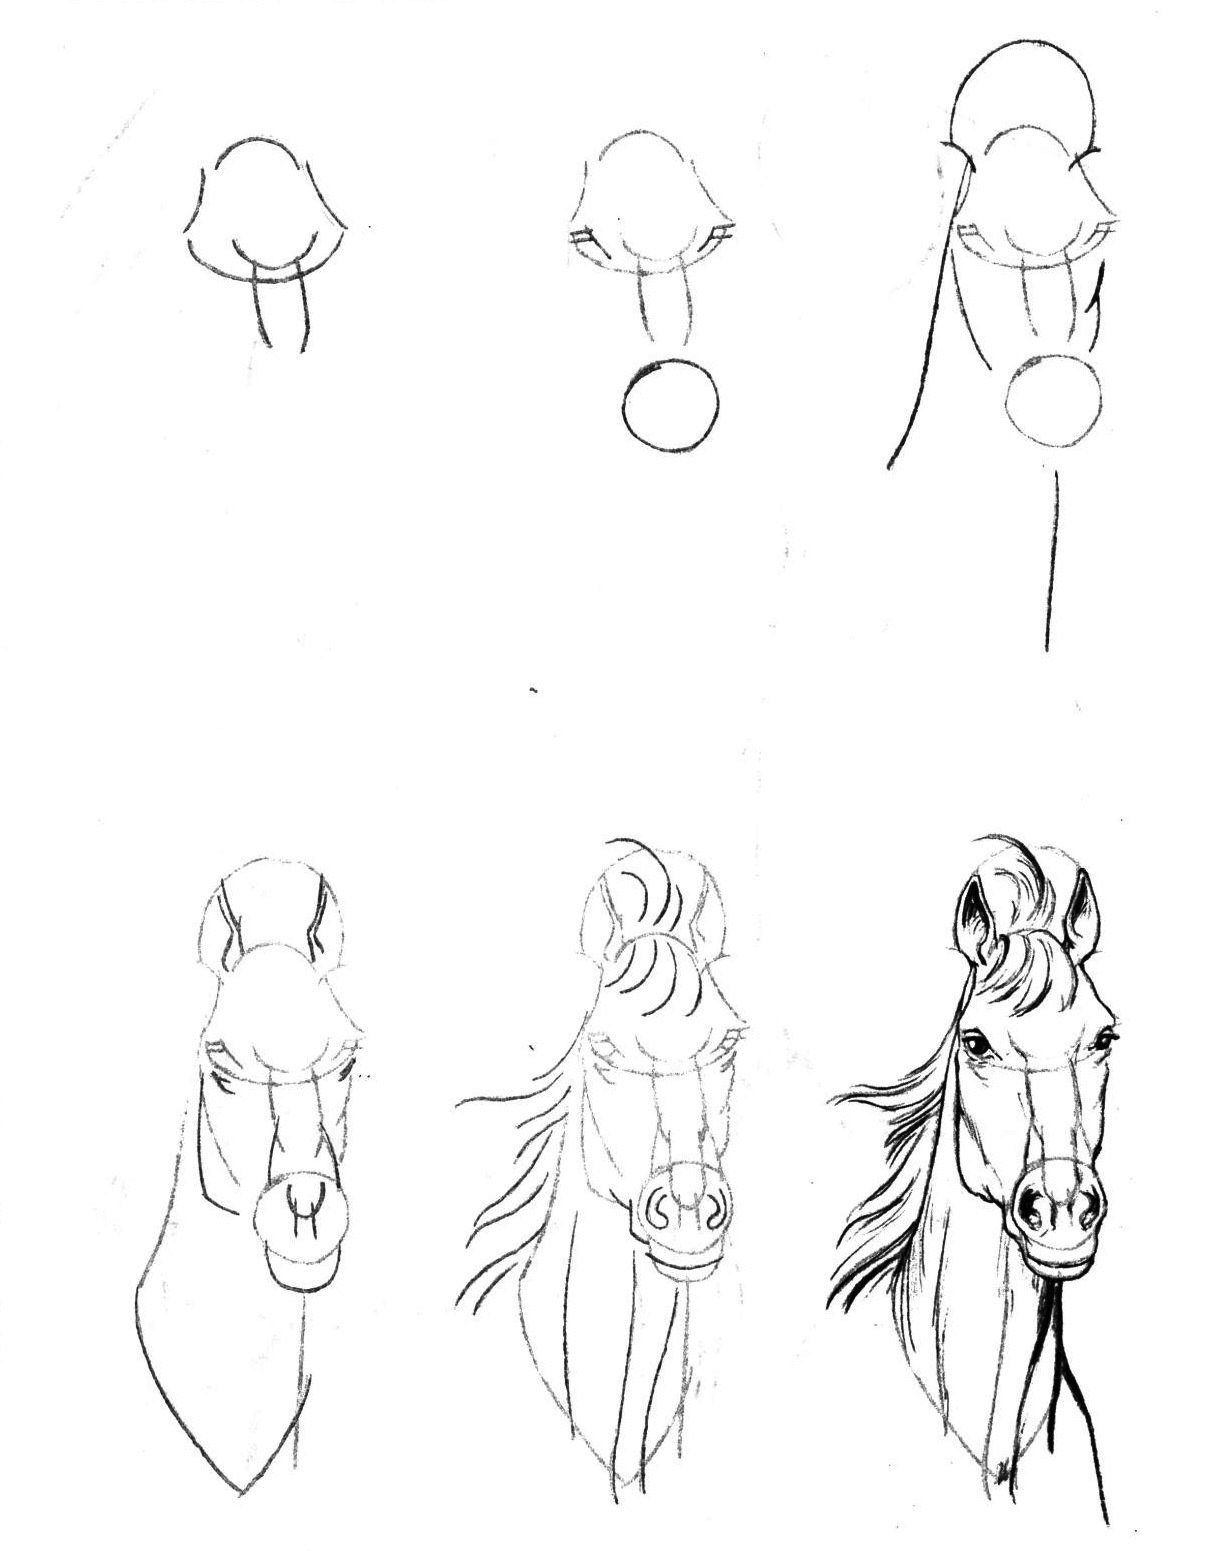 Уроки рисования для начинающих с нуля взрослых. Л. Эймис "рисуем 50 лошадей". Эймис л. "рисуем 50 собак". Эймис л. "рисуем 50 чудищ". Рисунки лёгкие и красивые.